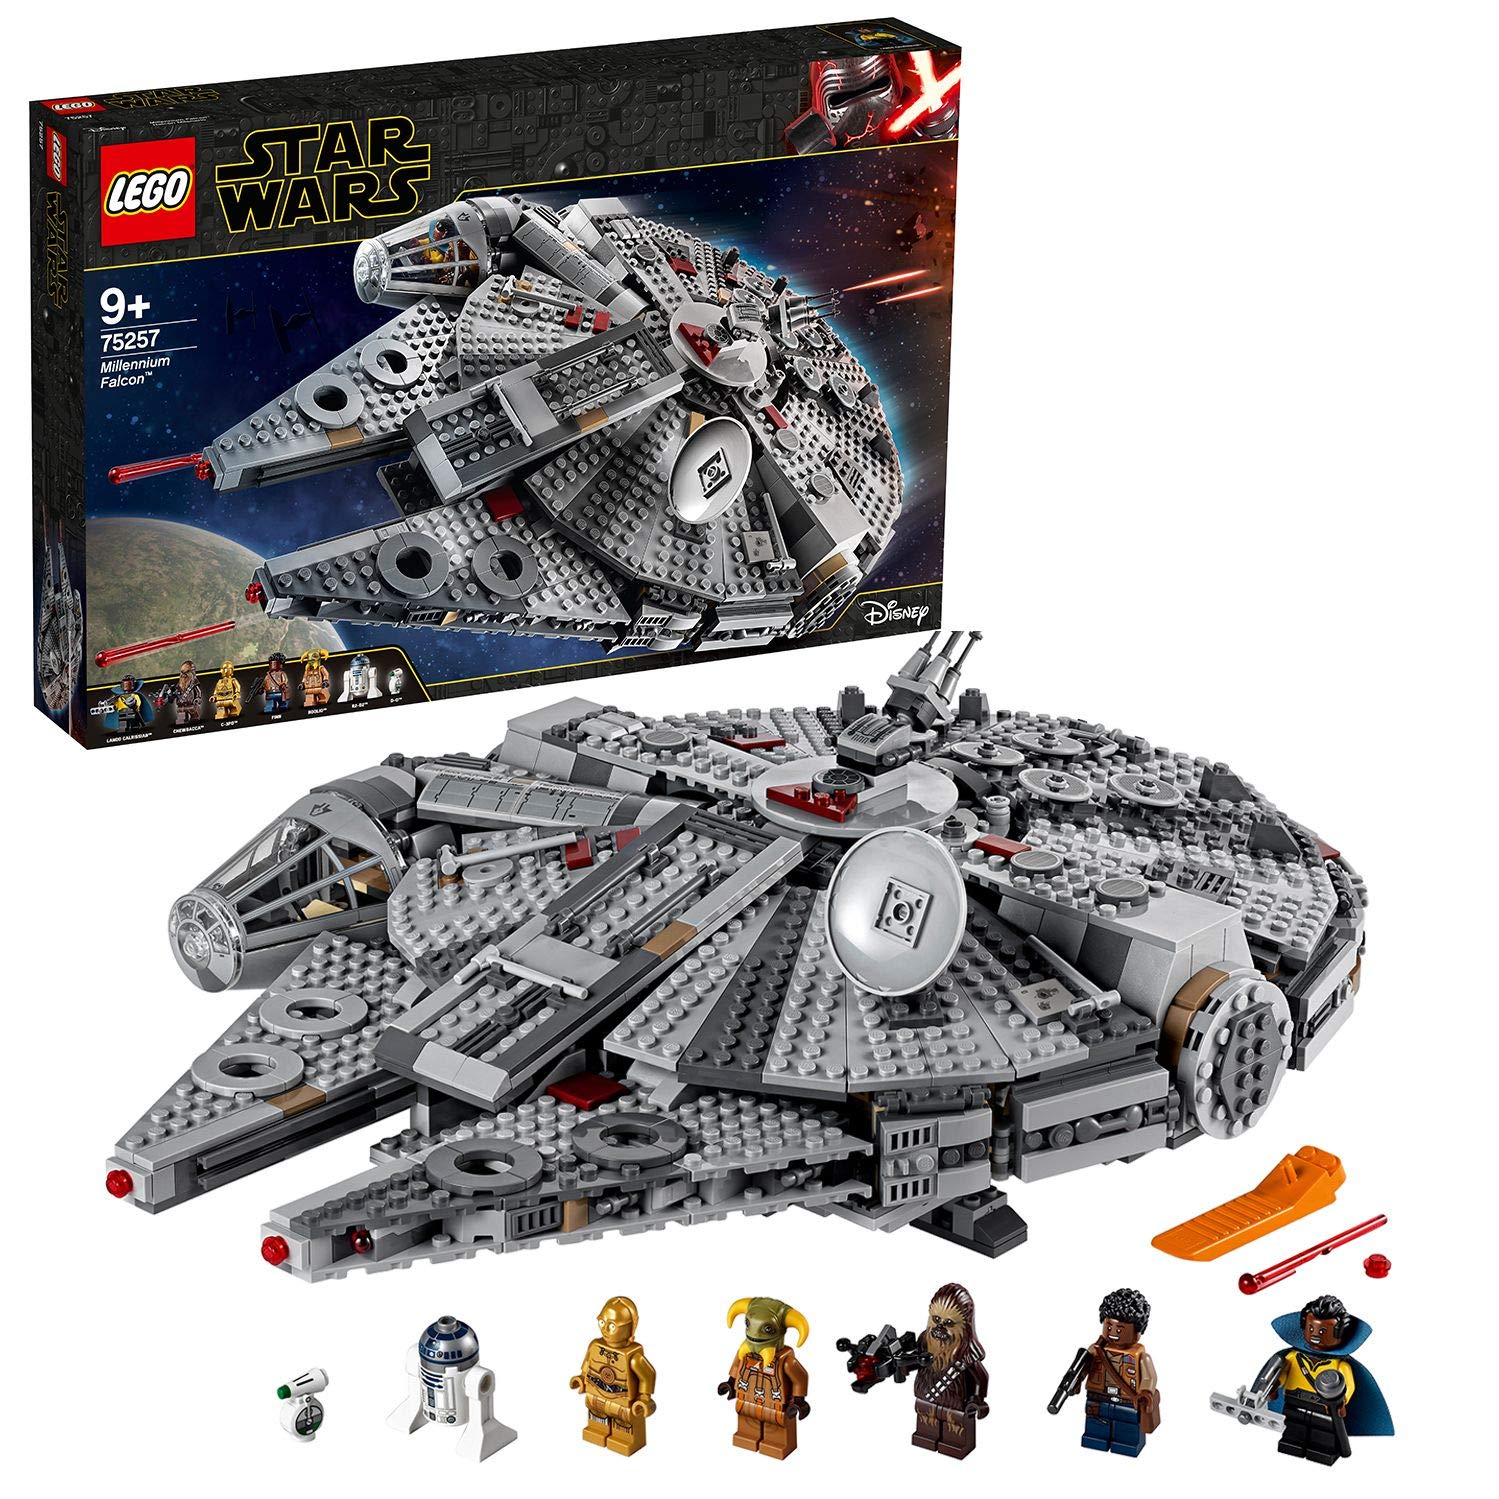 Lego 75257 Star Wars Millennium Falcon Construction Kit, Multi-Colour